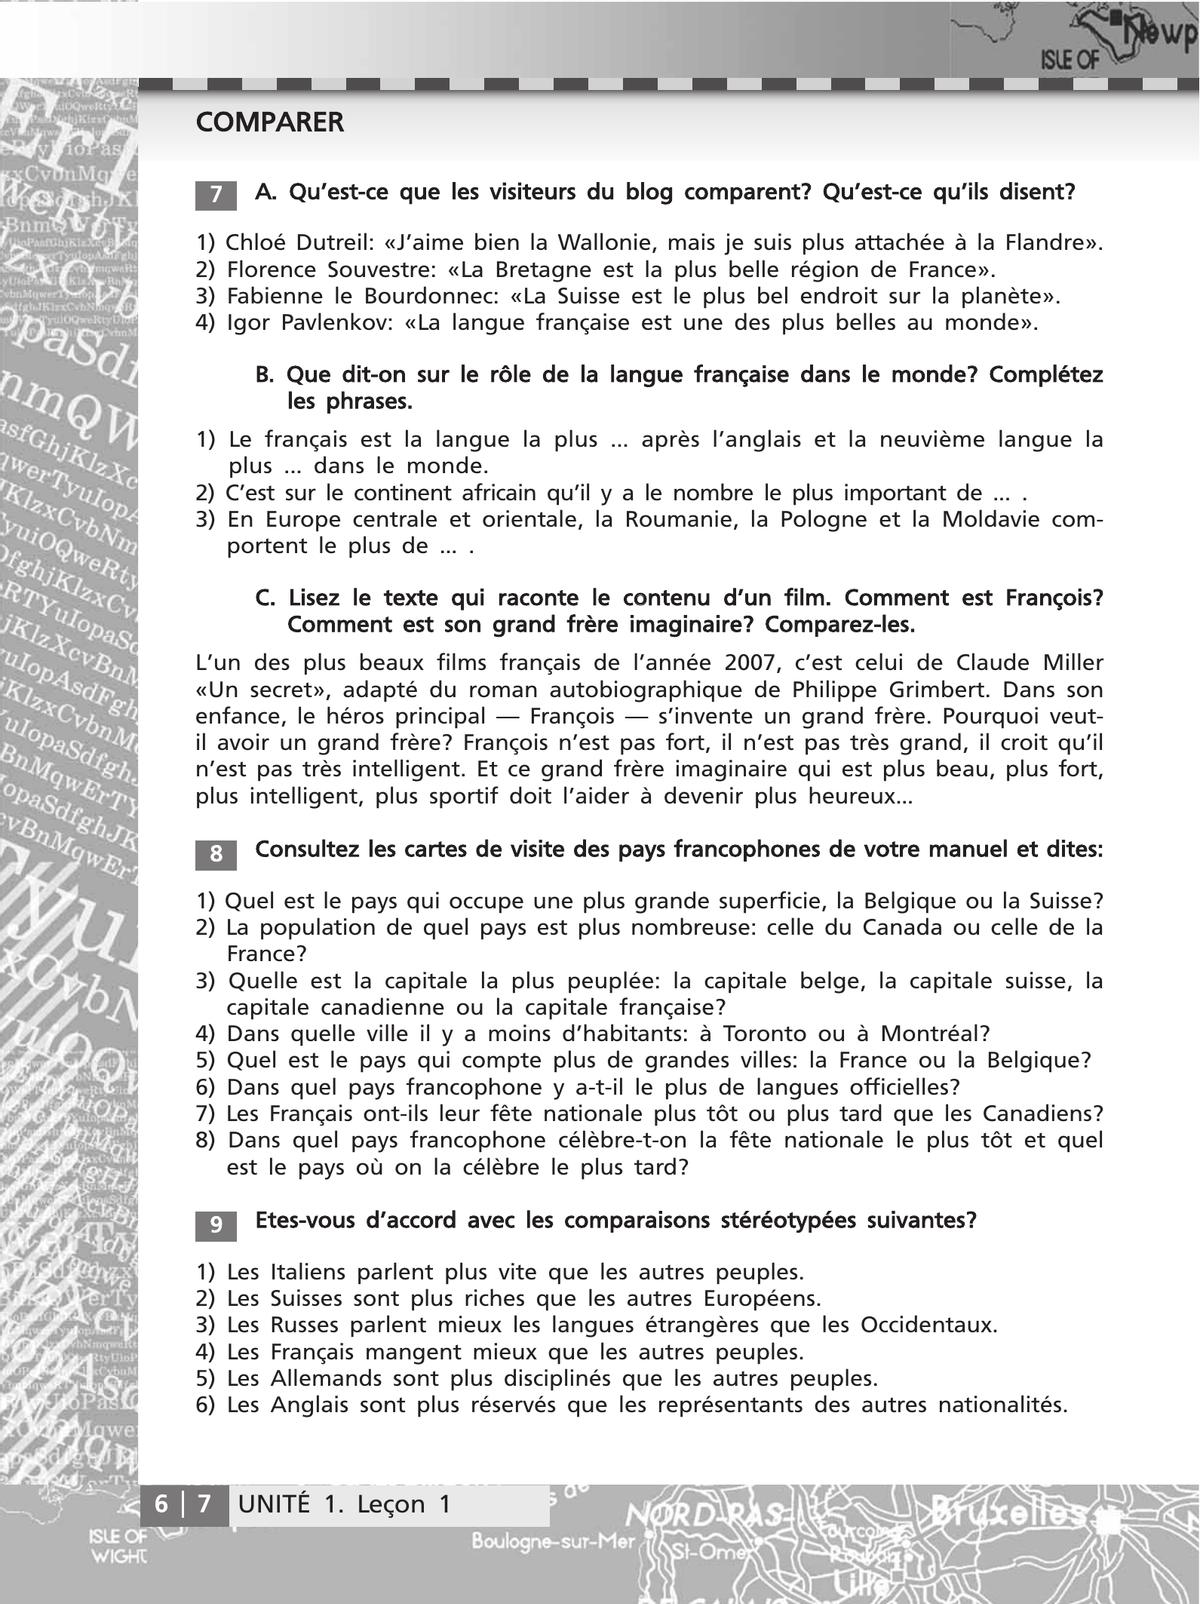 Французский язык. Второй иностранный язык. Сборник упражнений. 8-9 классы (второй и третий годы обучения) 6